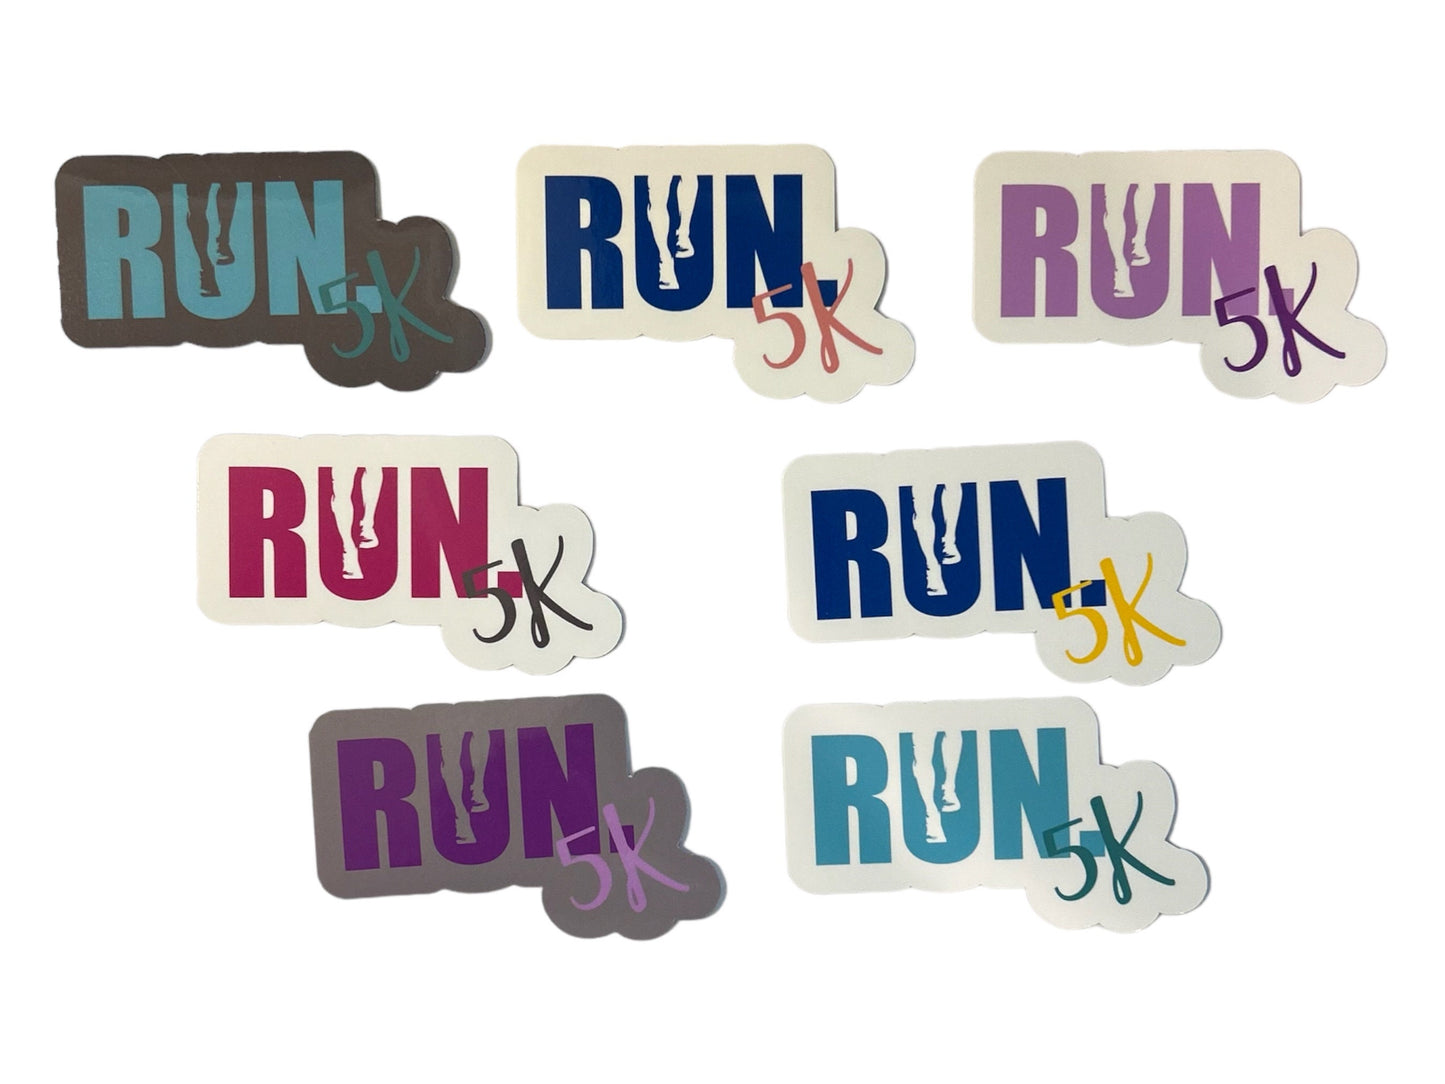 5K Runner Sticker